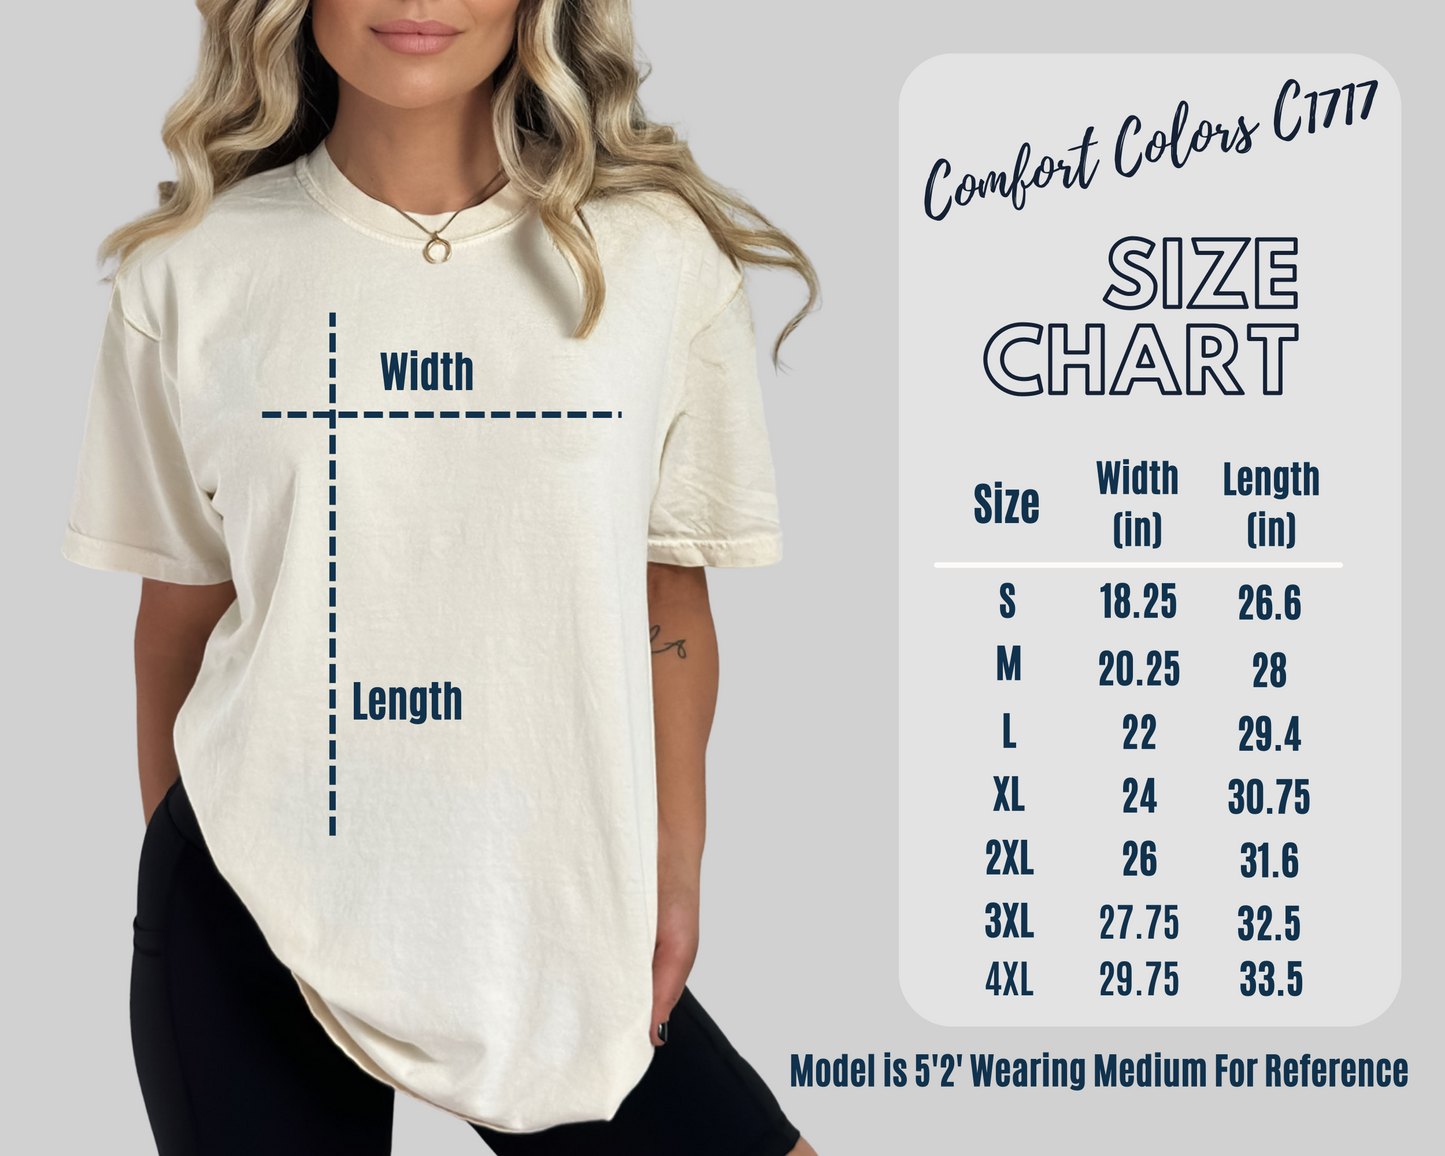 Comfort colors unisex t-shirt size chart